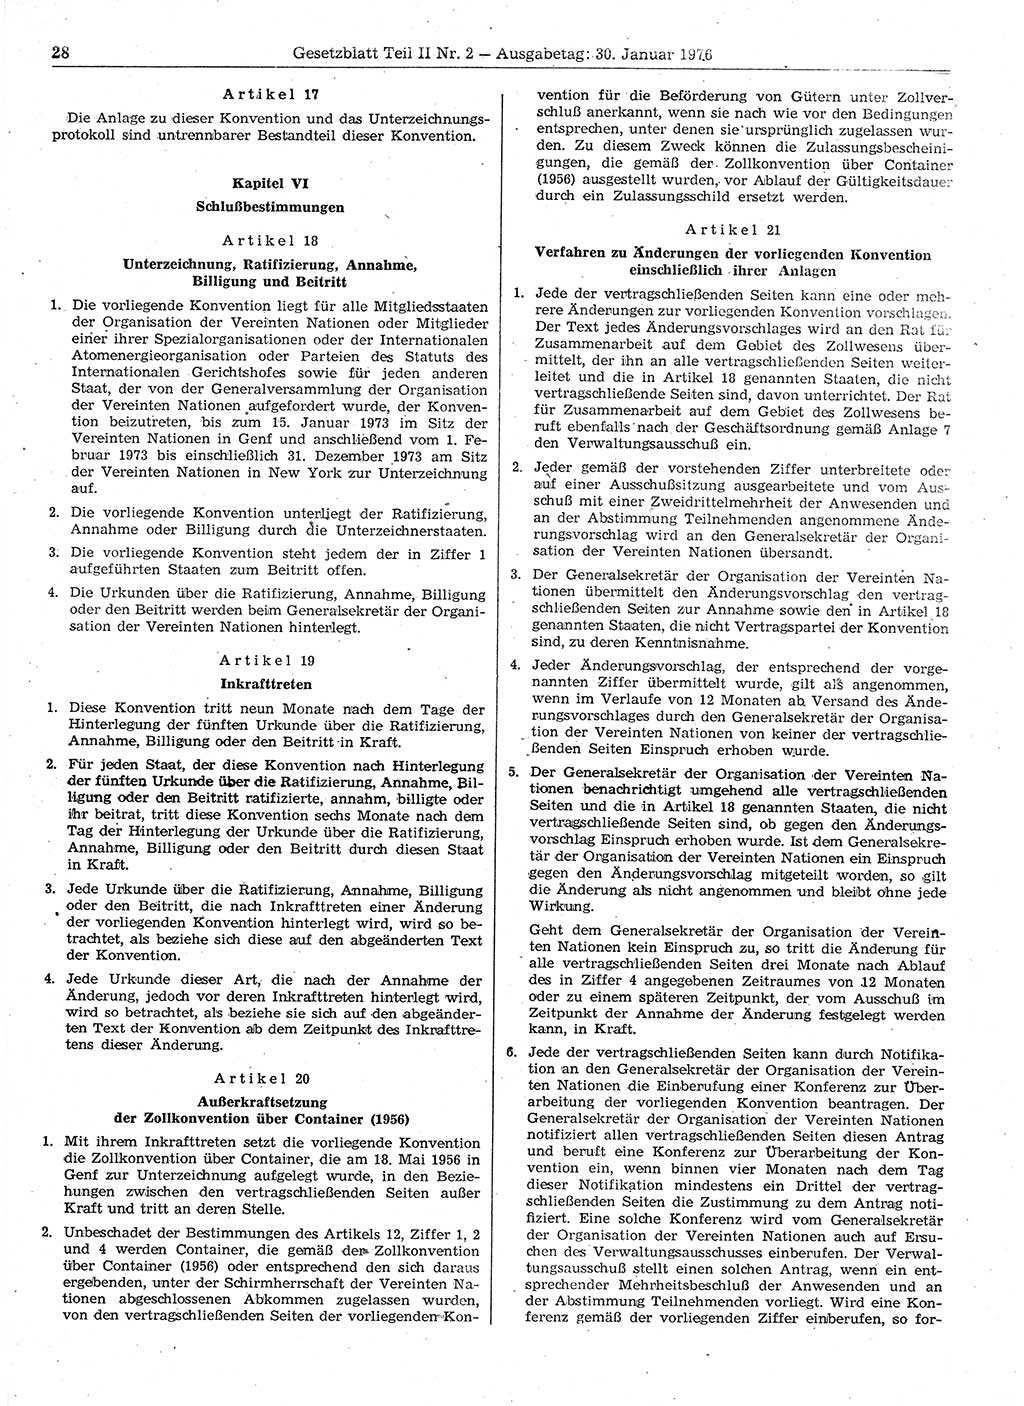 Gesetzblatt (GBl.) der Deutschen Demokratischen Republik (DDR) Teil ⅠⅠ 1976, Seite 28 (GBl. DDR ⅠⅠ 1976, S. 28)